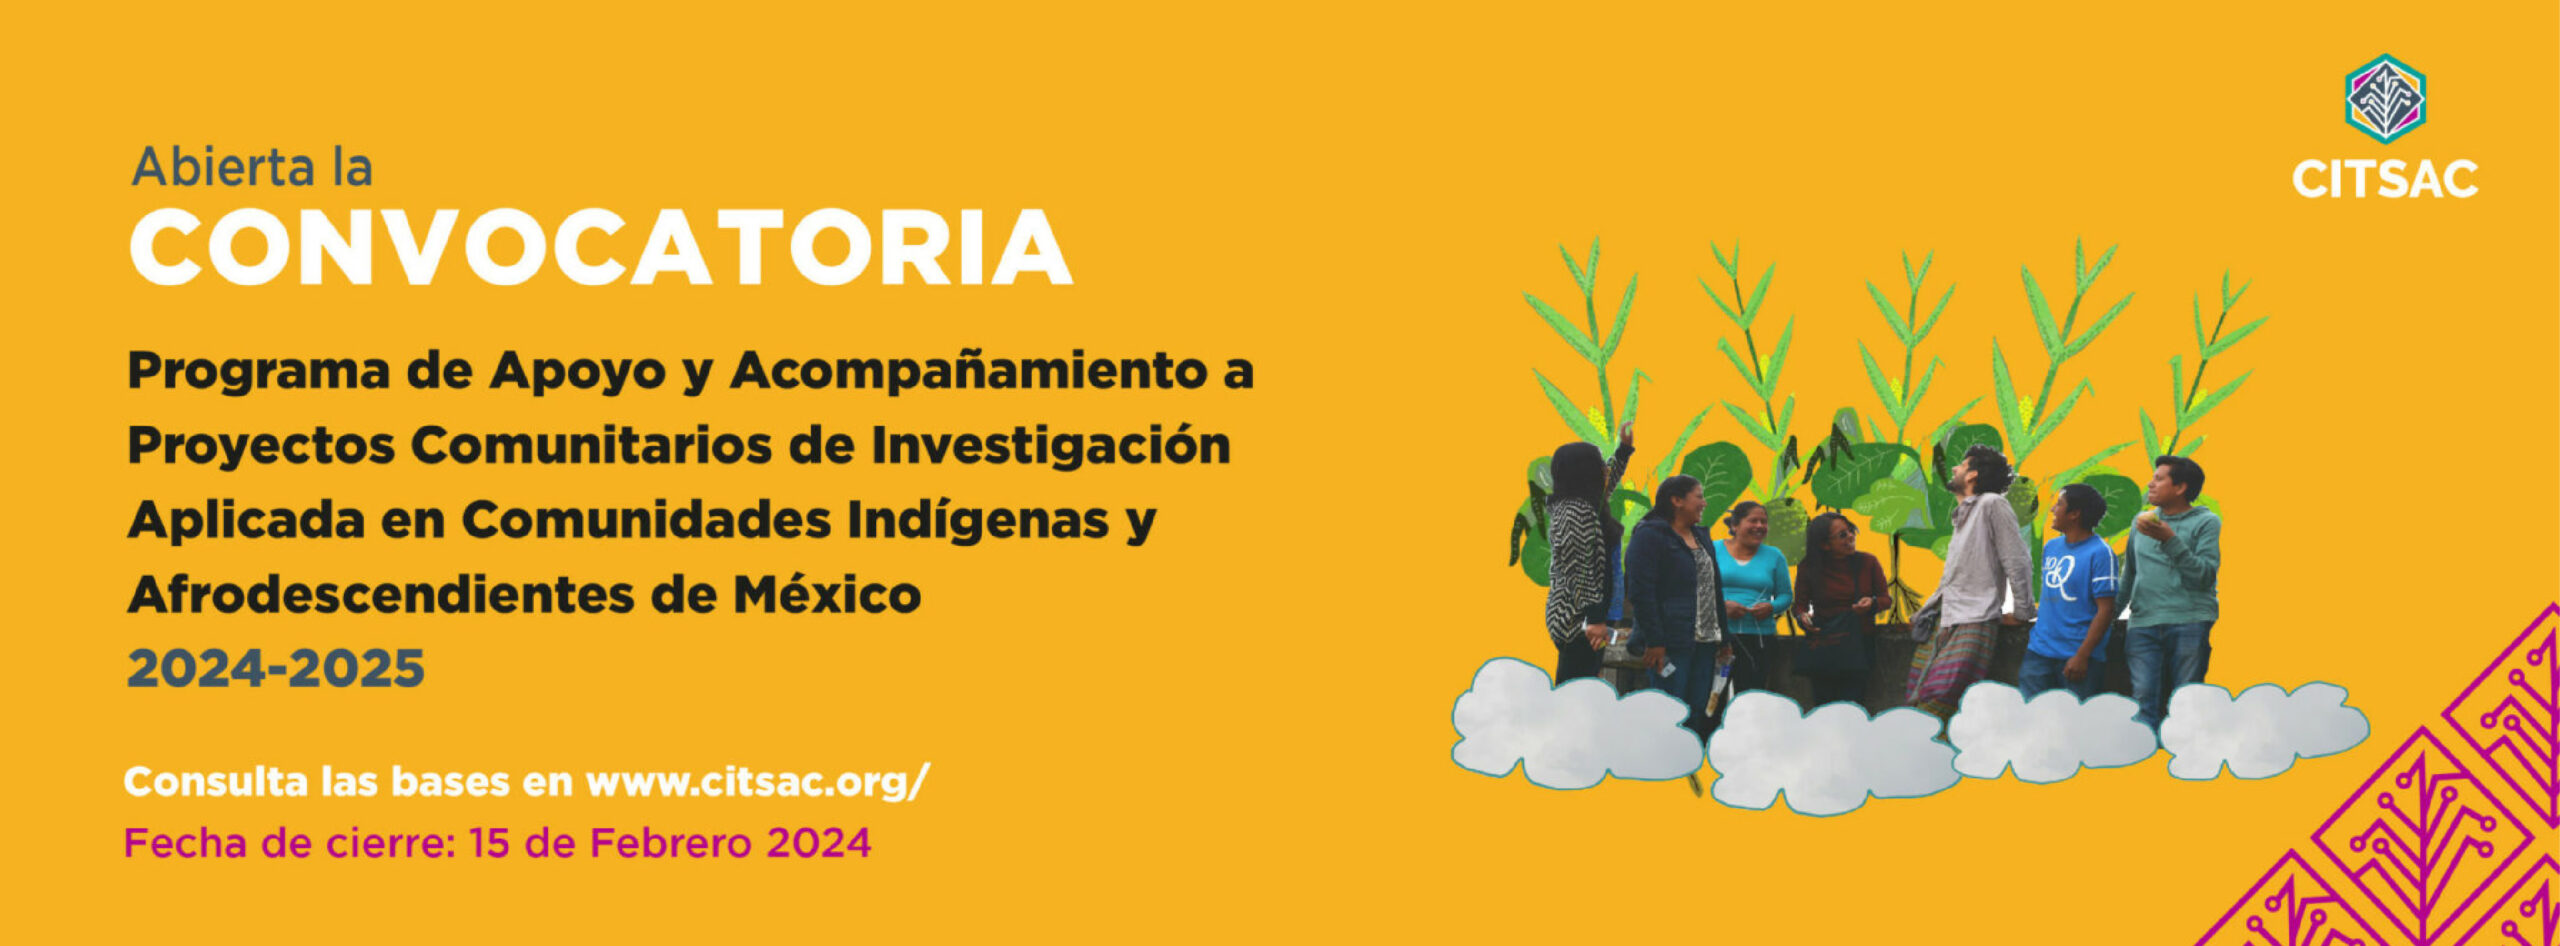 Convocatoria abierta | Programa de apoyo y Acompañamiento a Proyectos Comunitarios de Investigación Aplicada en Comunidades Indígenas y Afrodescendientes de México 2024-2025.